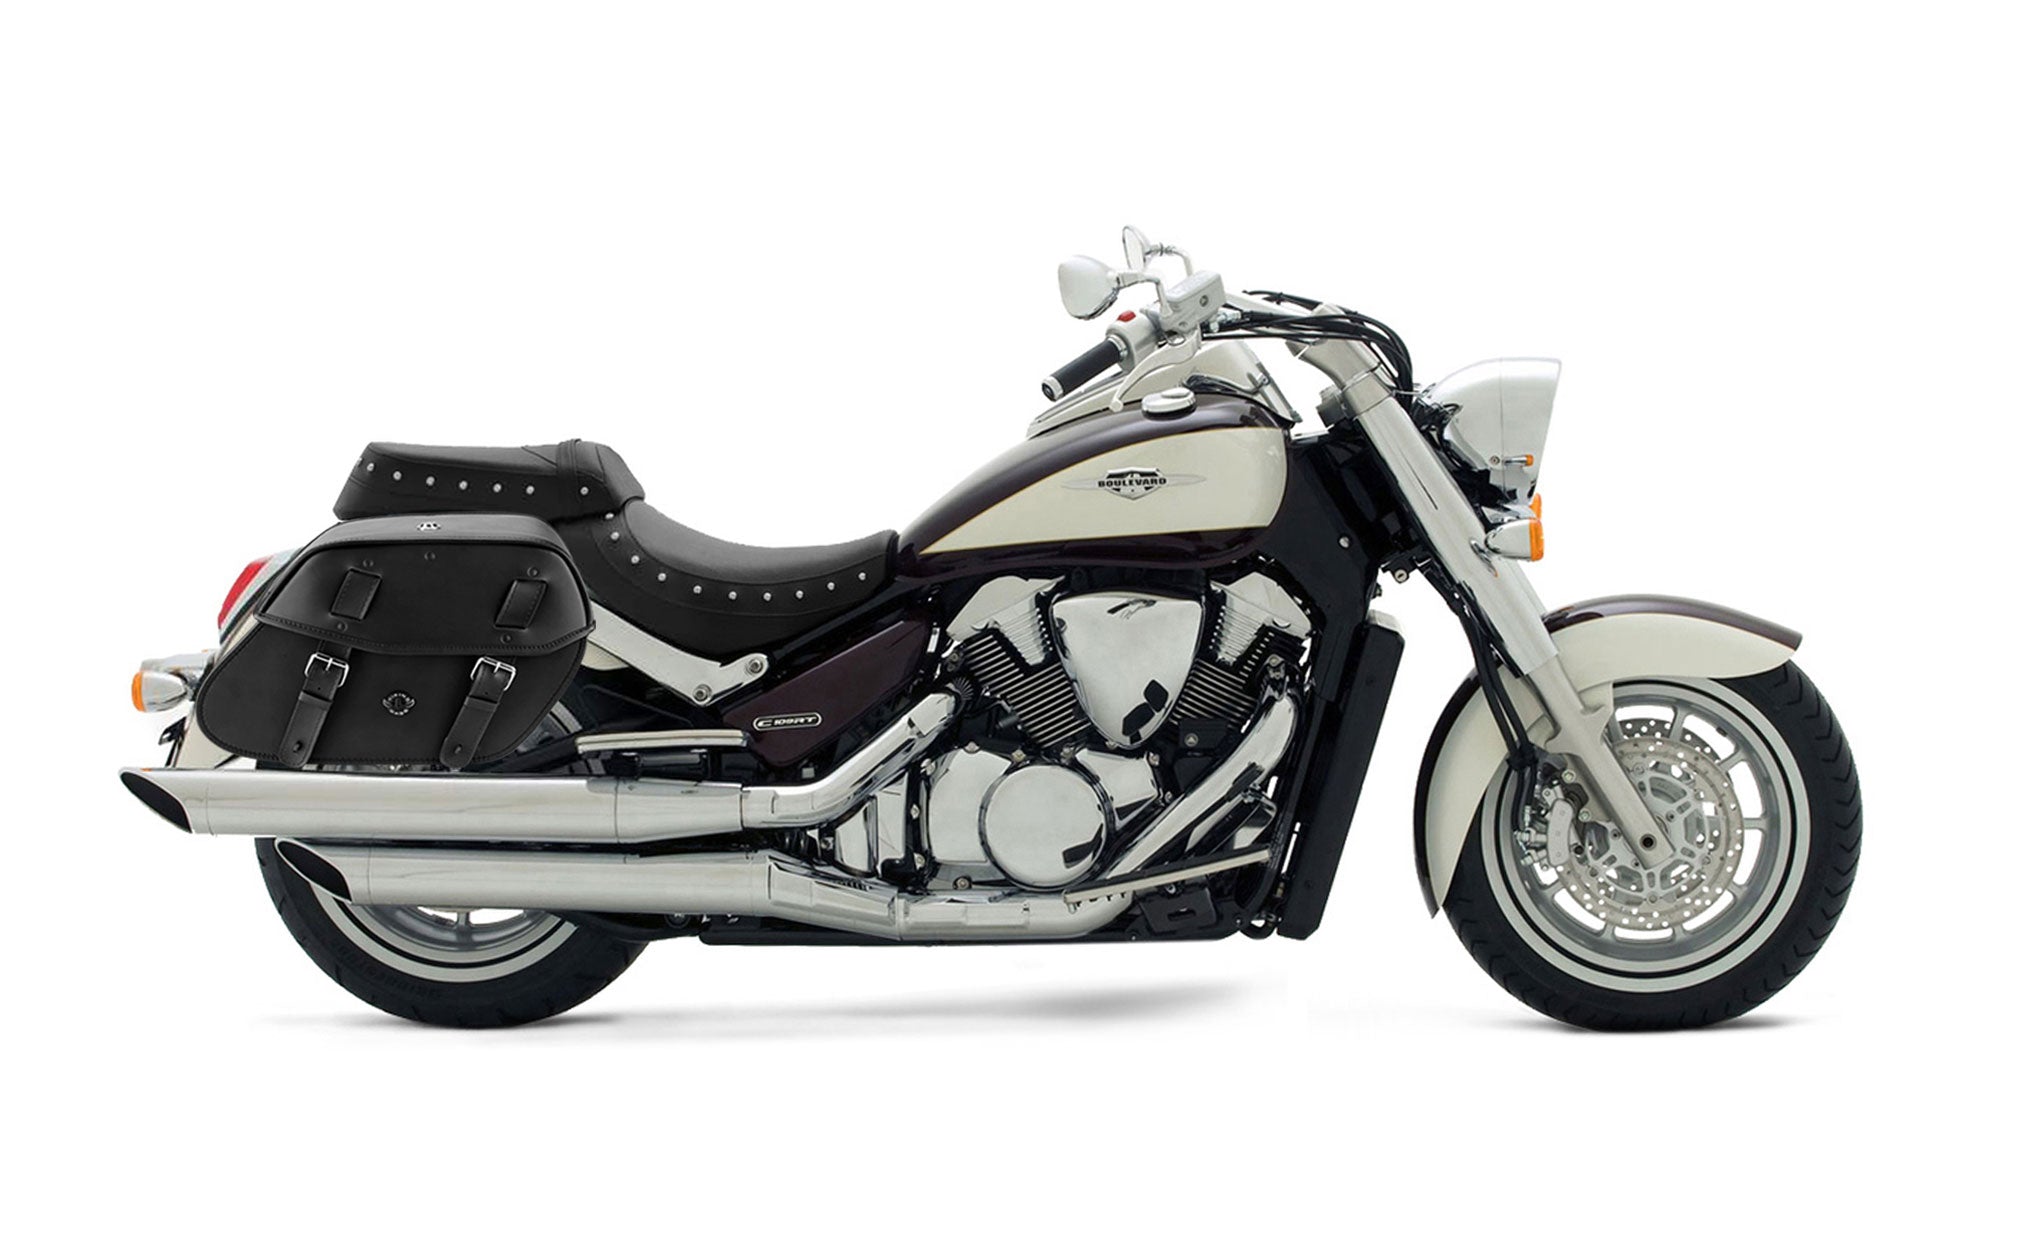 Viking Odin Large Suzuki Boulevard C109 Leather Motorcycle Saddlebags on Bike Photo @expand